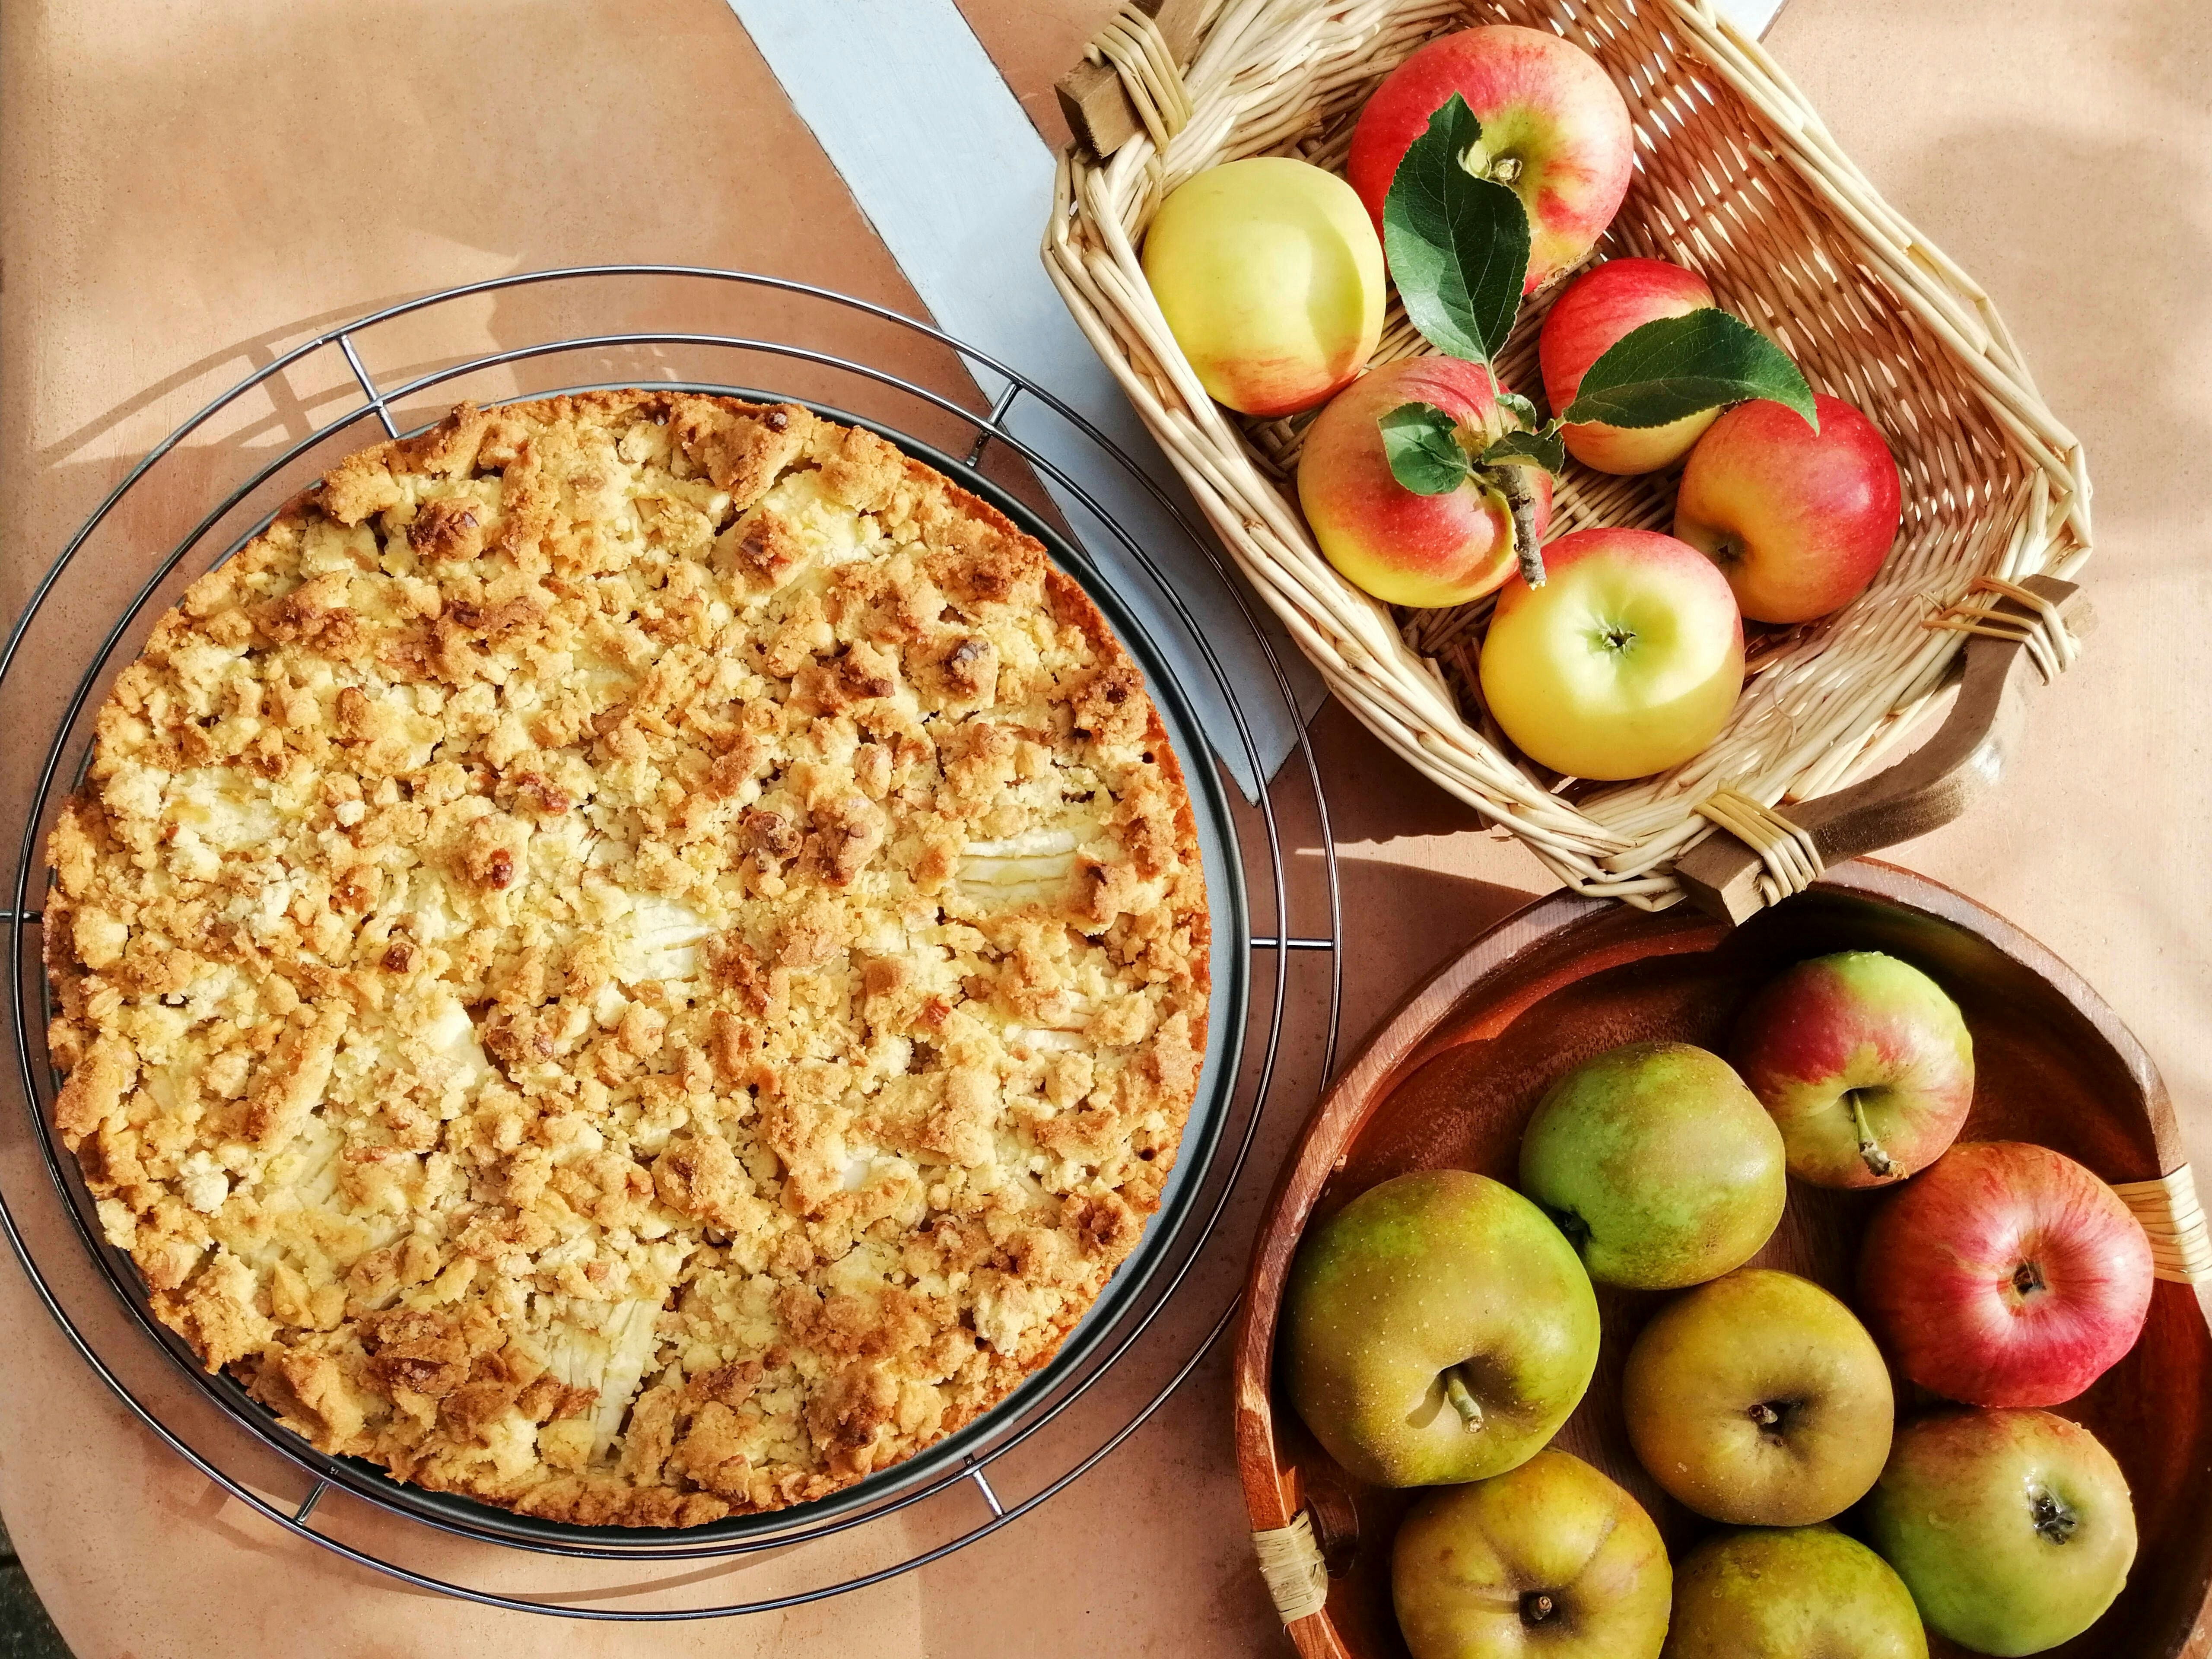 Blätterteig-Apfelkuchen nach Omas Rezept: So schnell gemacht, so saftig ...